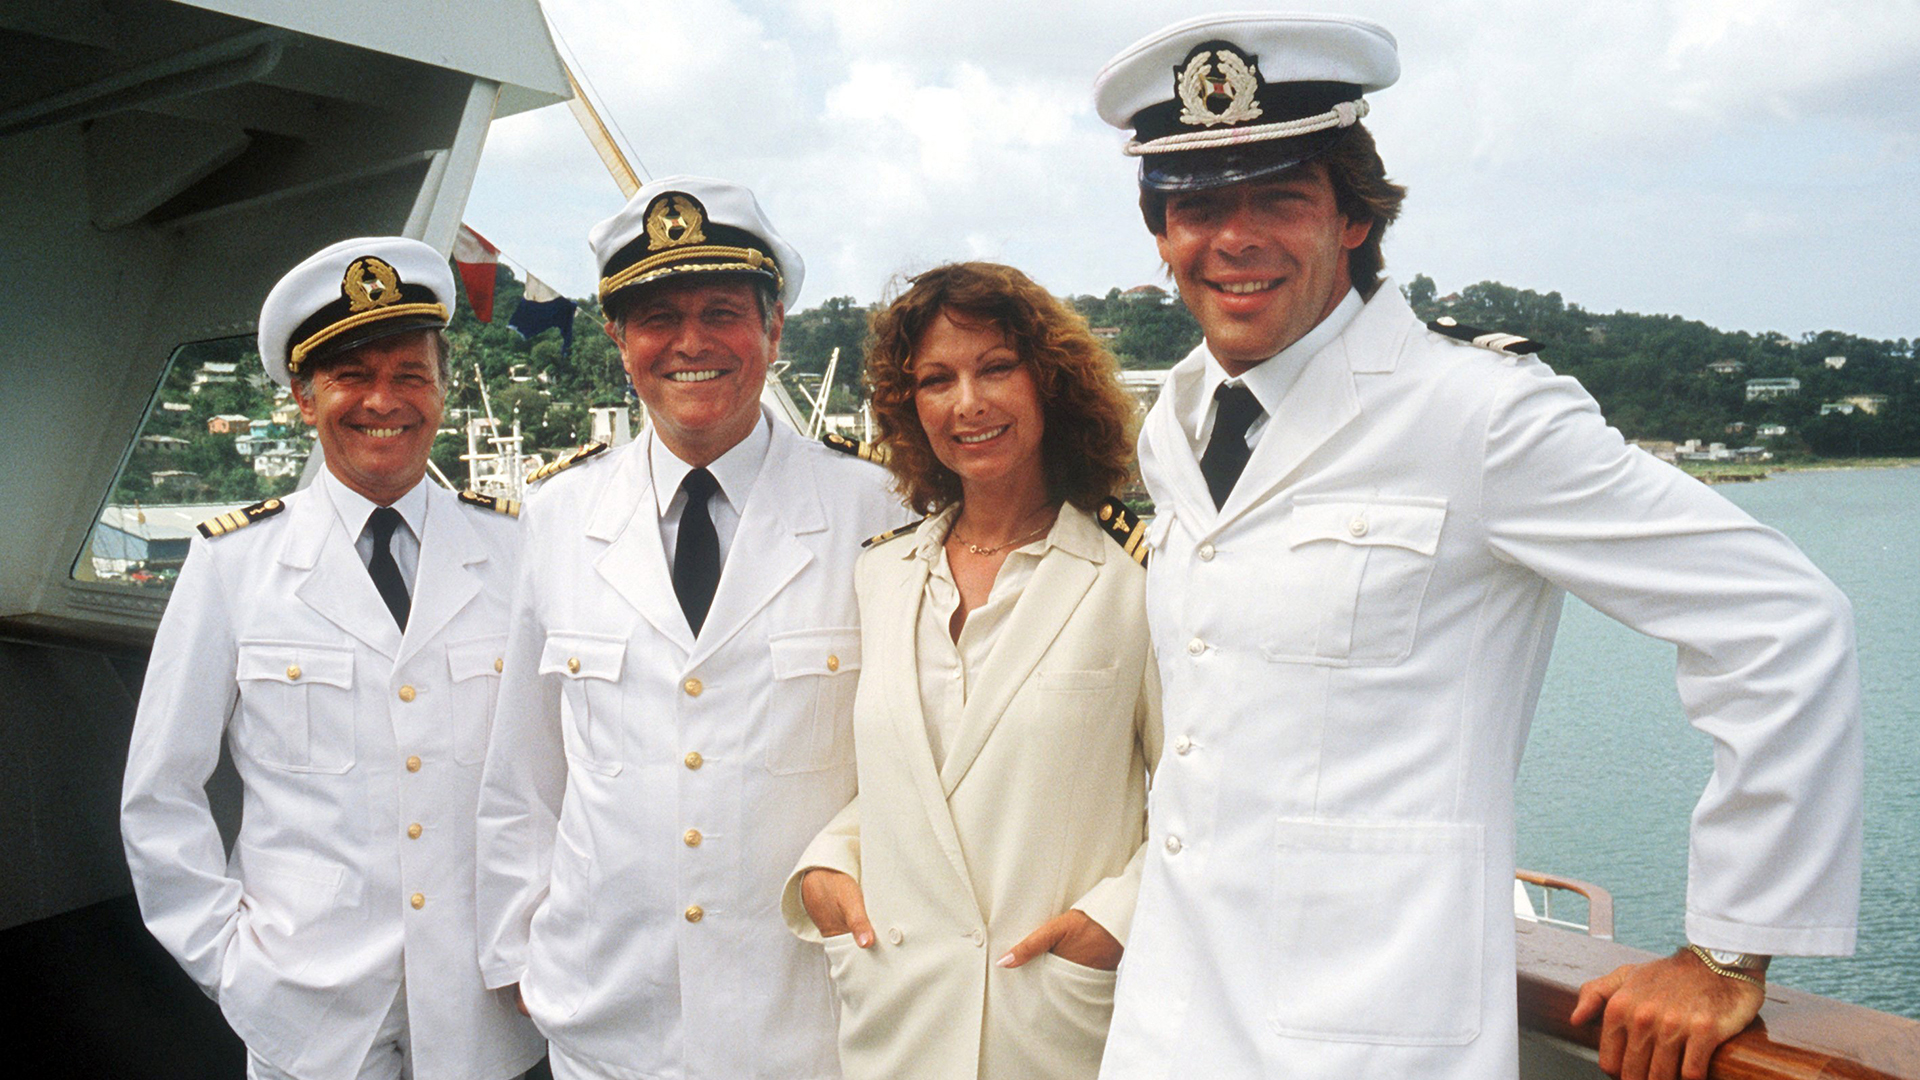 Die "Traumschiff"-Crew von 1983 (l-r) Horst Naumann als Schiffsarzt, Heinz Weiss als Kapitän, Heide Keller als Stewardess und Sascha Hehn als Steward. | dpa